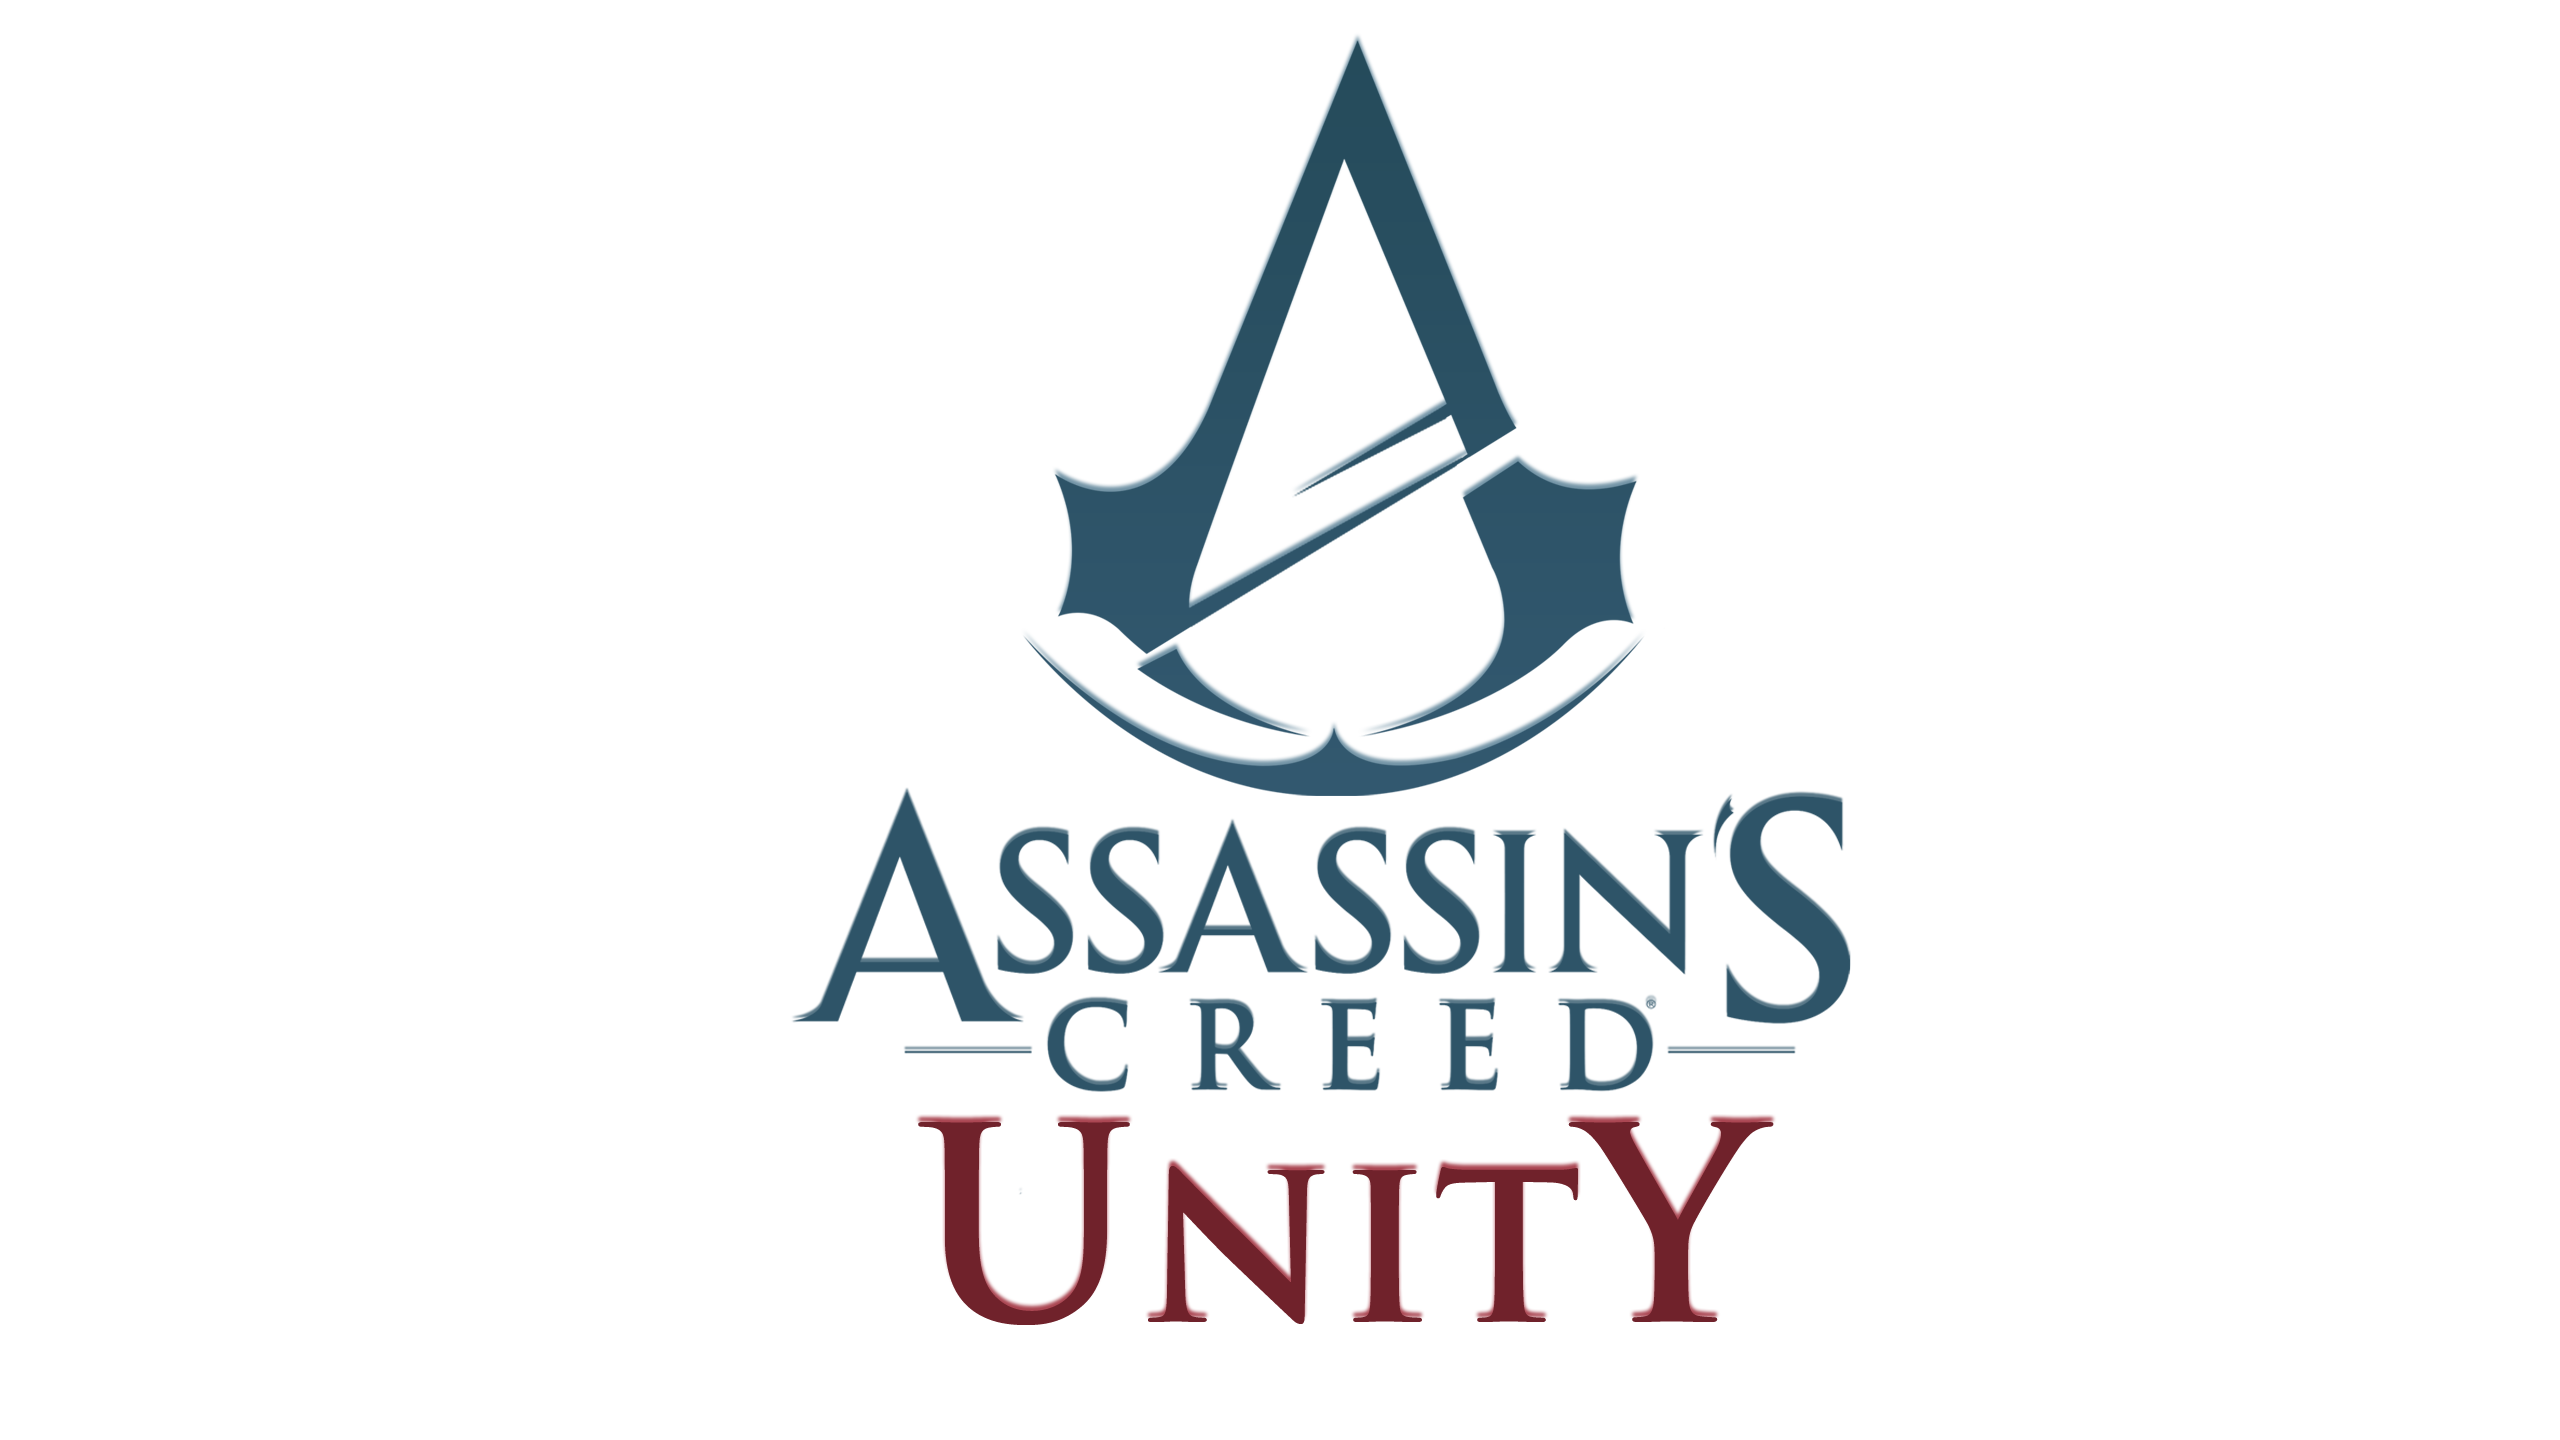 Assassin’s Creed Unity, rinviata la data di uscita